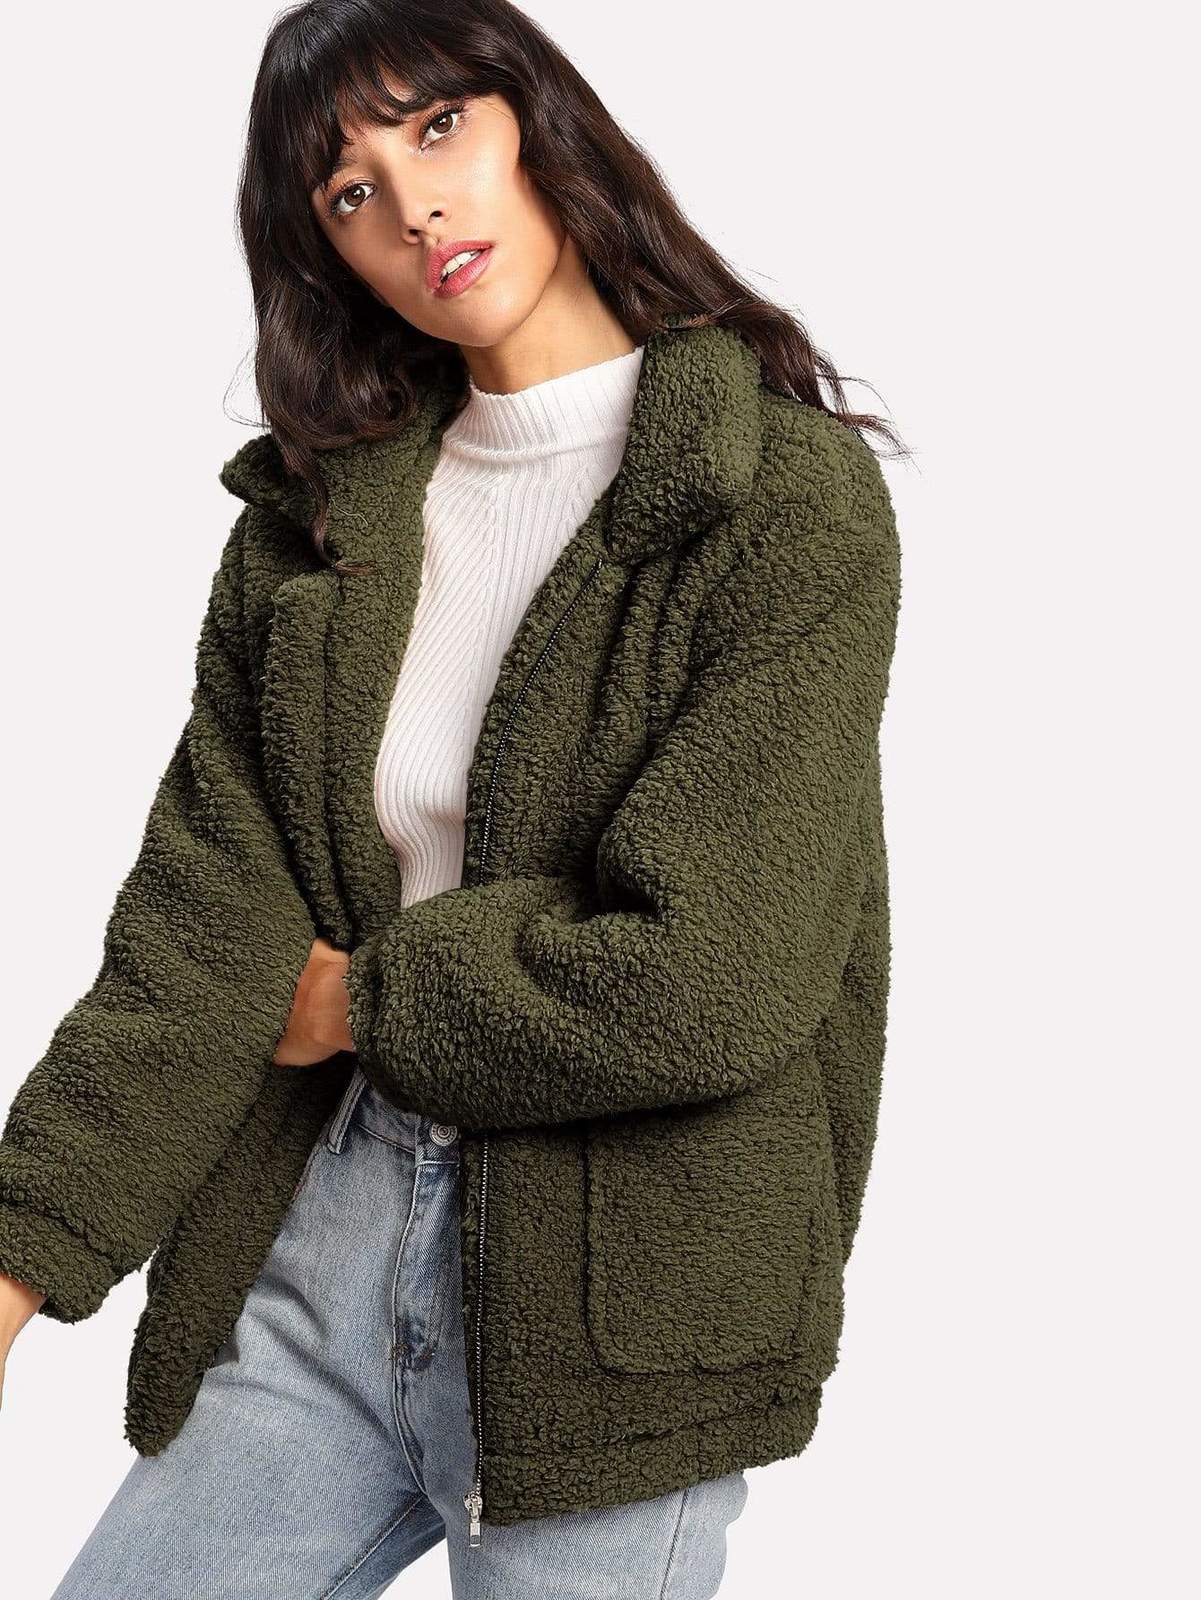 Womens Warm Winter Zip Up Solid Teddy Jacket - Coats, Jackets & Vests